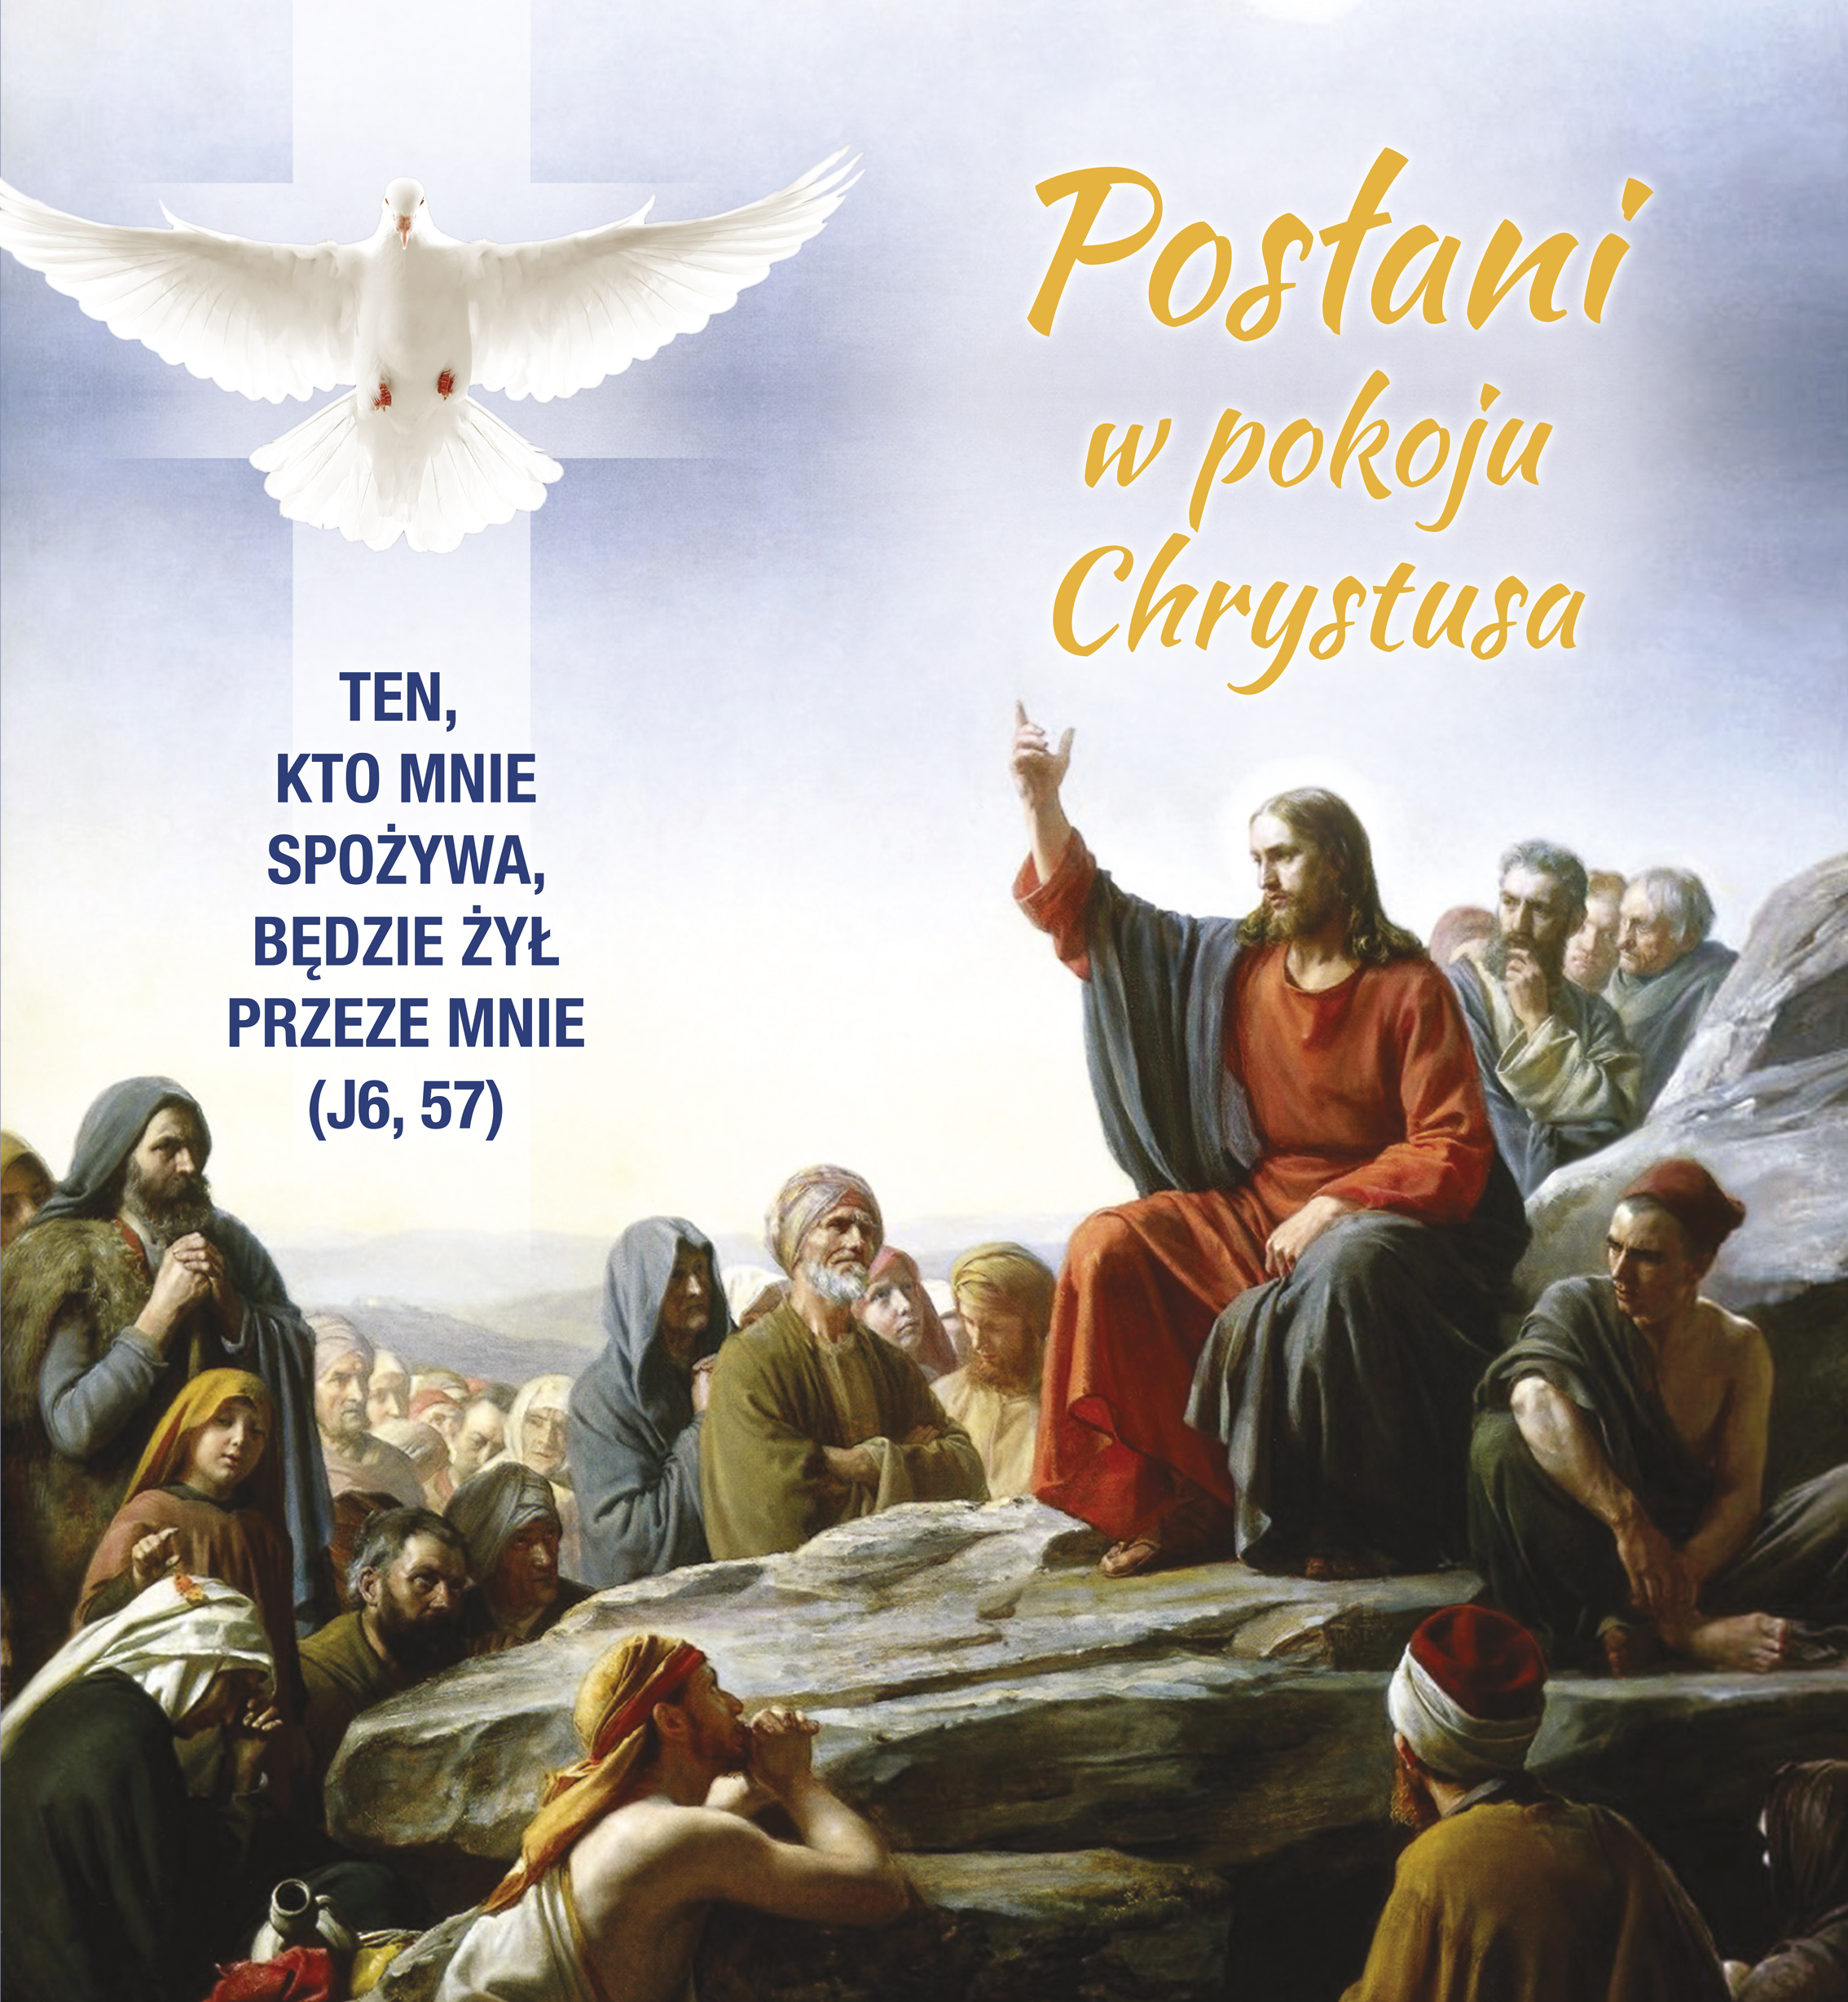 Posłani w pokoju Chrystusa - 09 - Baner religijny - 240x260